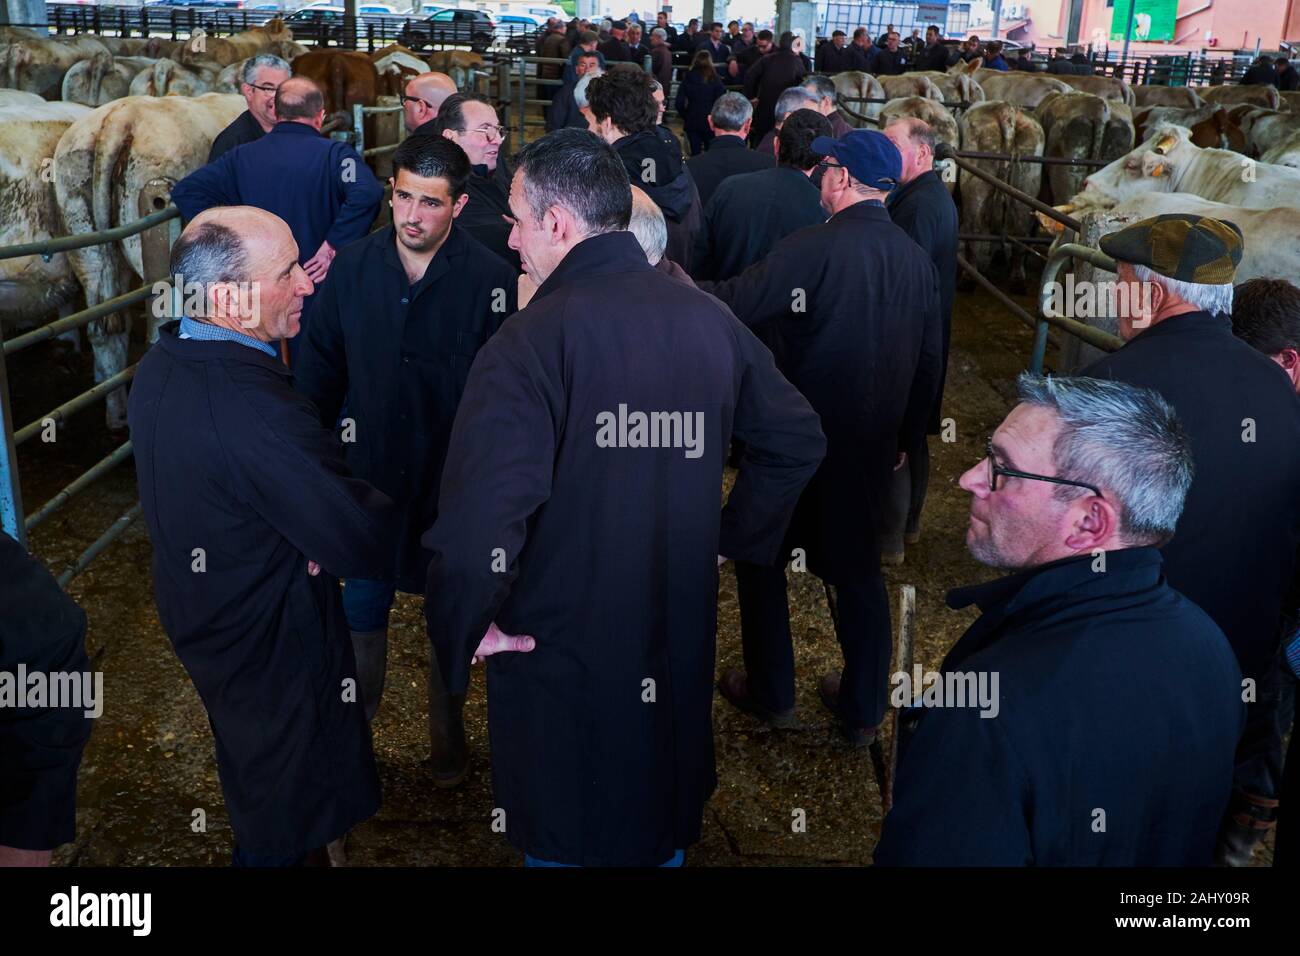 En France, en Saône-et-Loire (71), Saint-Christophe-en-Brionnais, vente de bovins, marché au bétail, la vente aux enchères des boeufs Charolais Banque D'Images